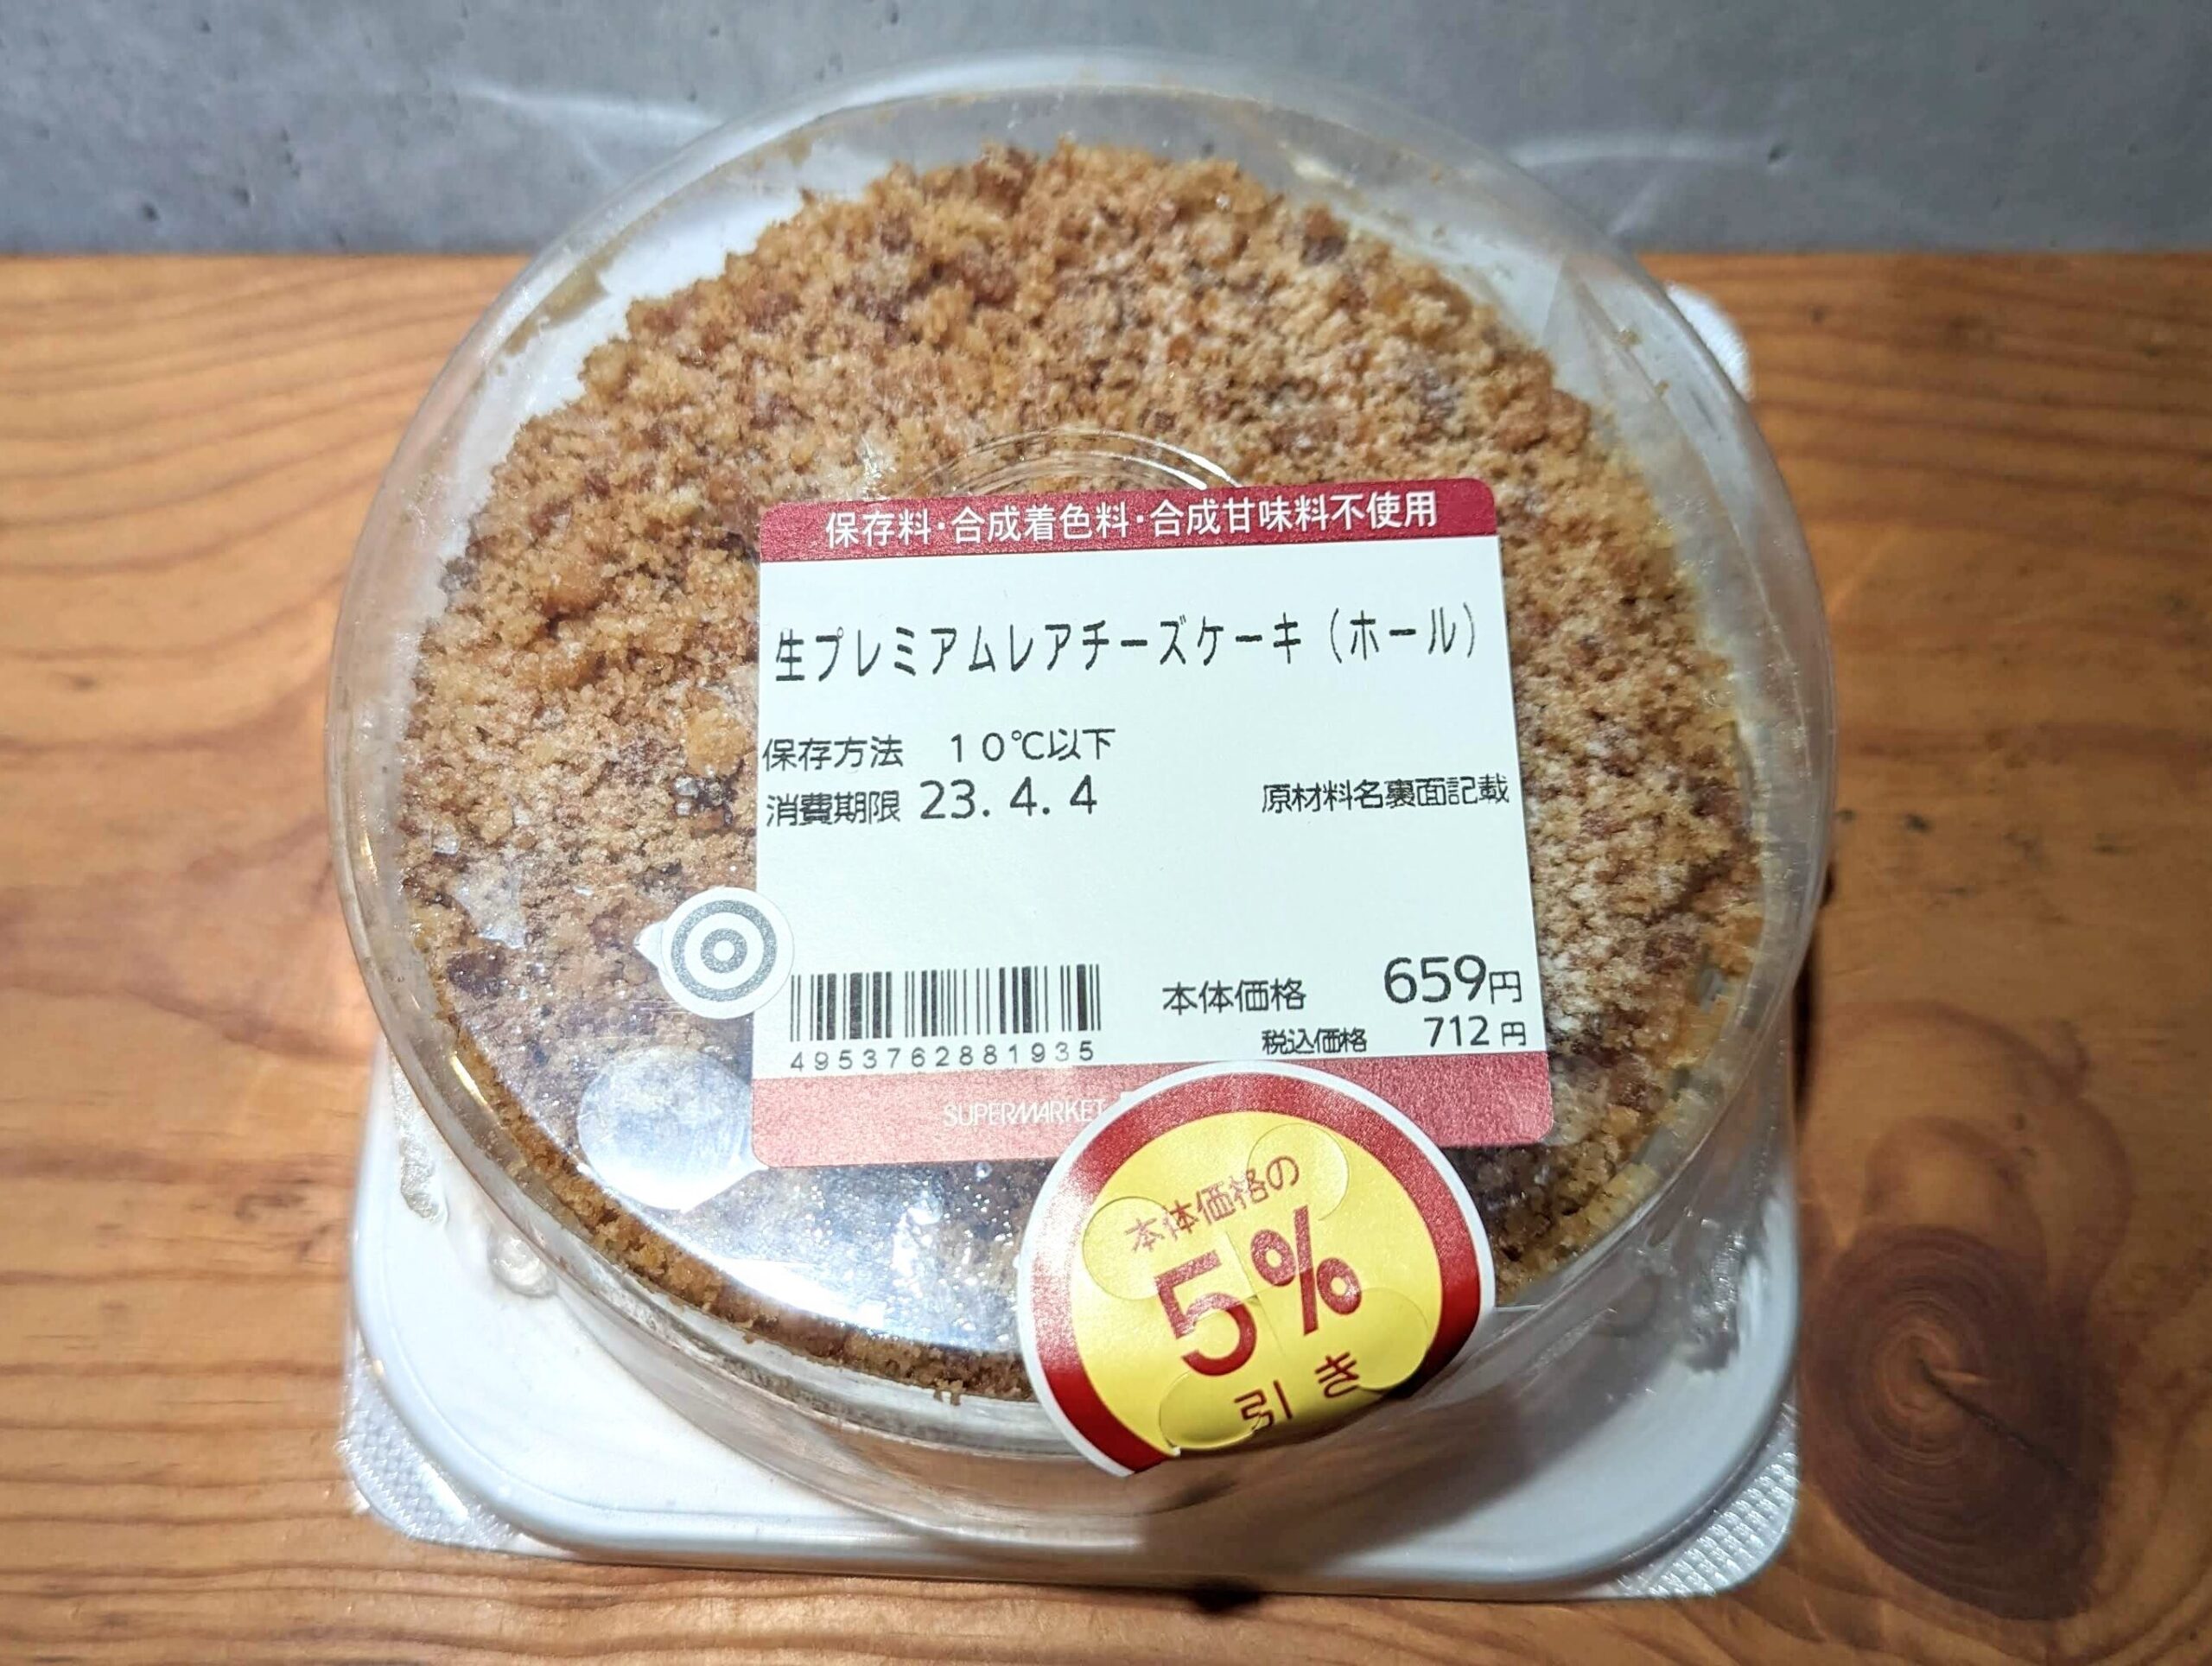 成城石井・生プレミアムレアチーズケーキ (1)